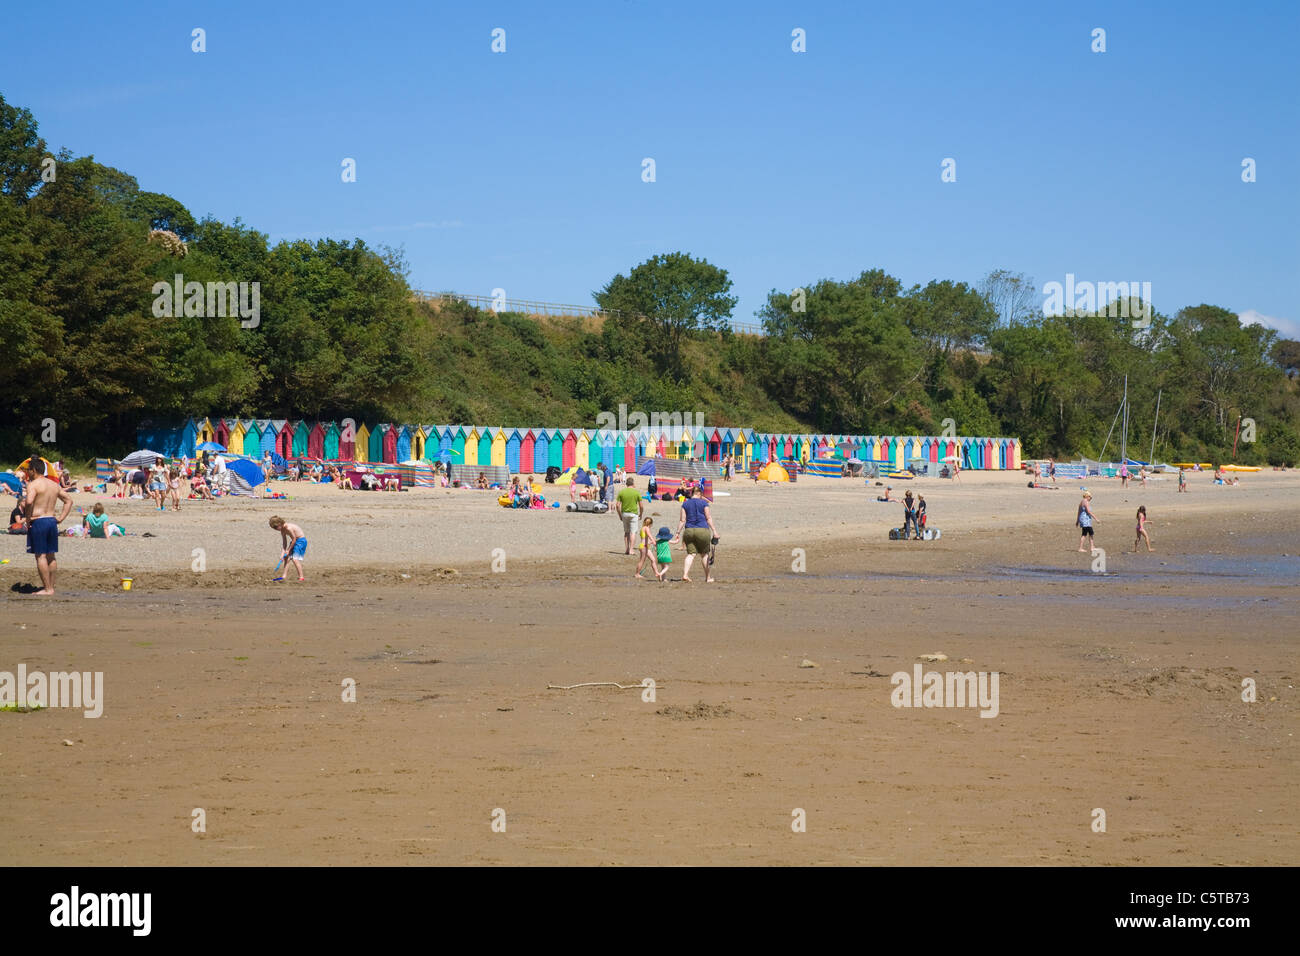 Llanbedrog Gwynedd au nord du Pays de Galles Royaume-uni Juillet vacanciers faisant plus d'une journée ensoleillée d'été visiter cette plage de sable gallois Banque D'Images